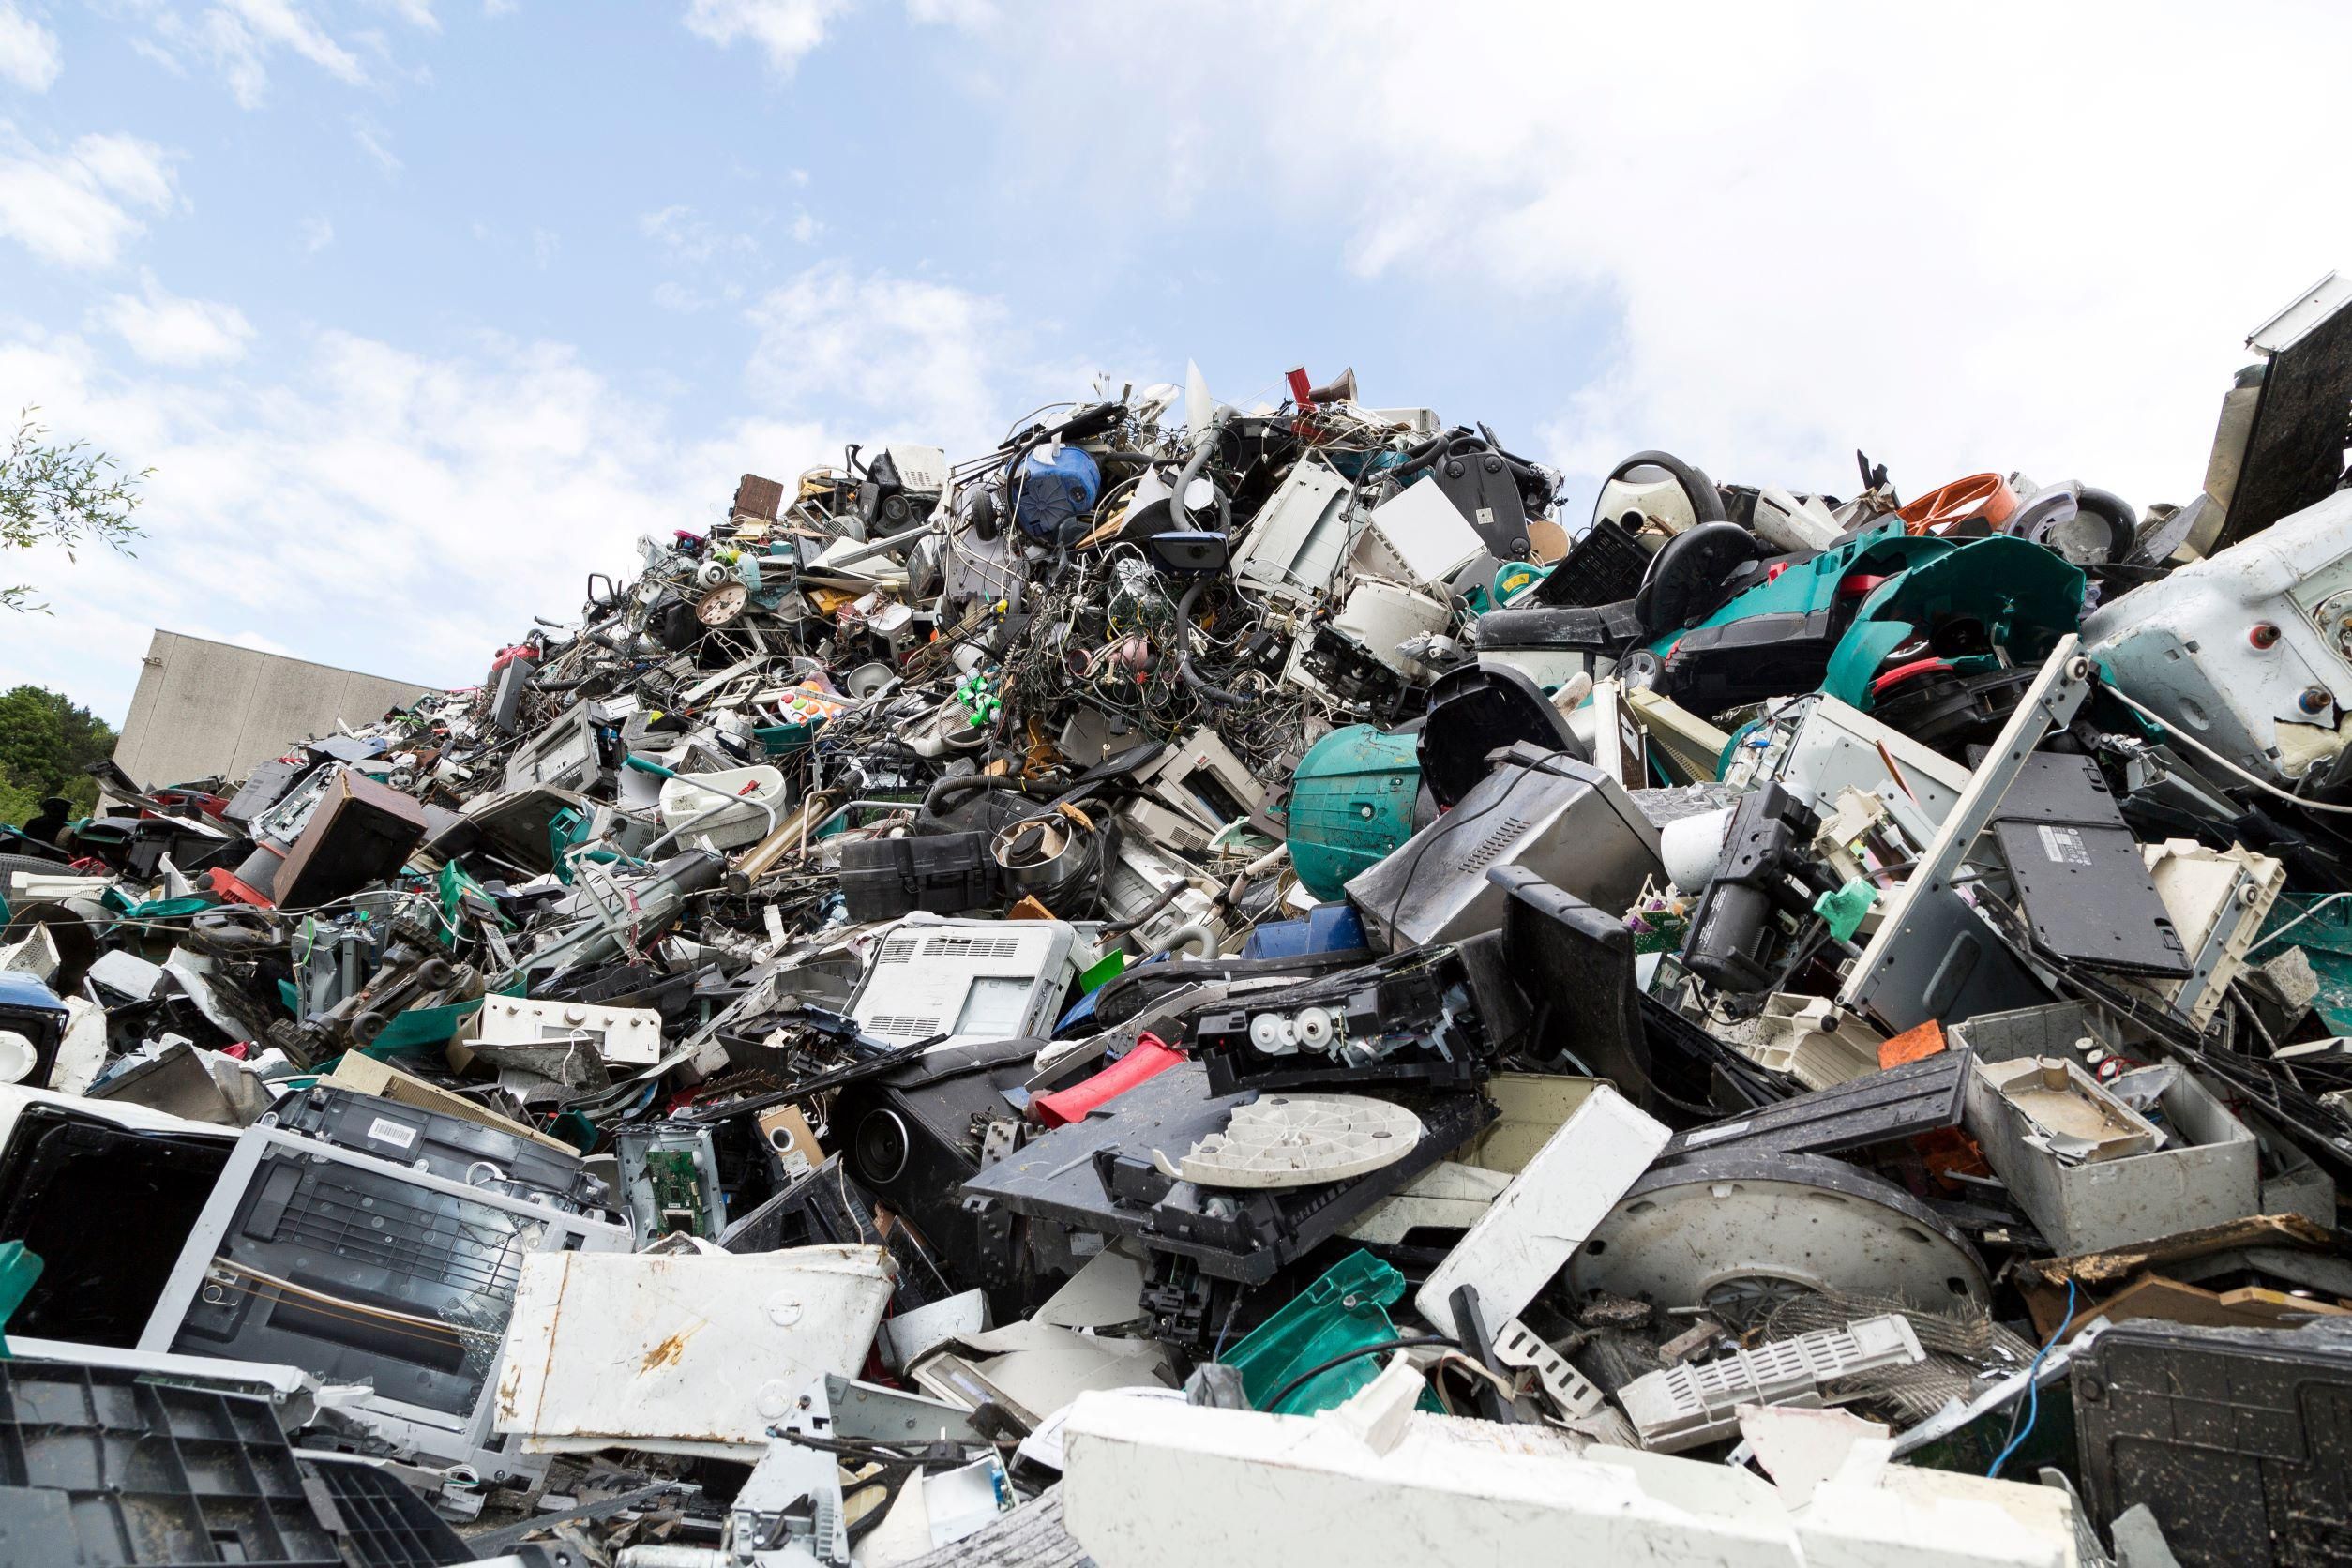 Irtózatos mennyiségú e-hulladékot termelünk, de egyre több magyarnak fontos a fenntarthatóság